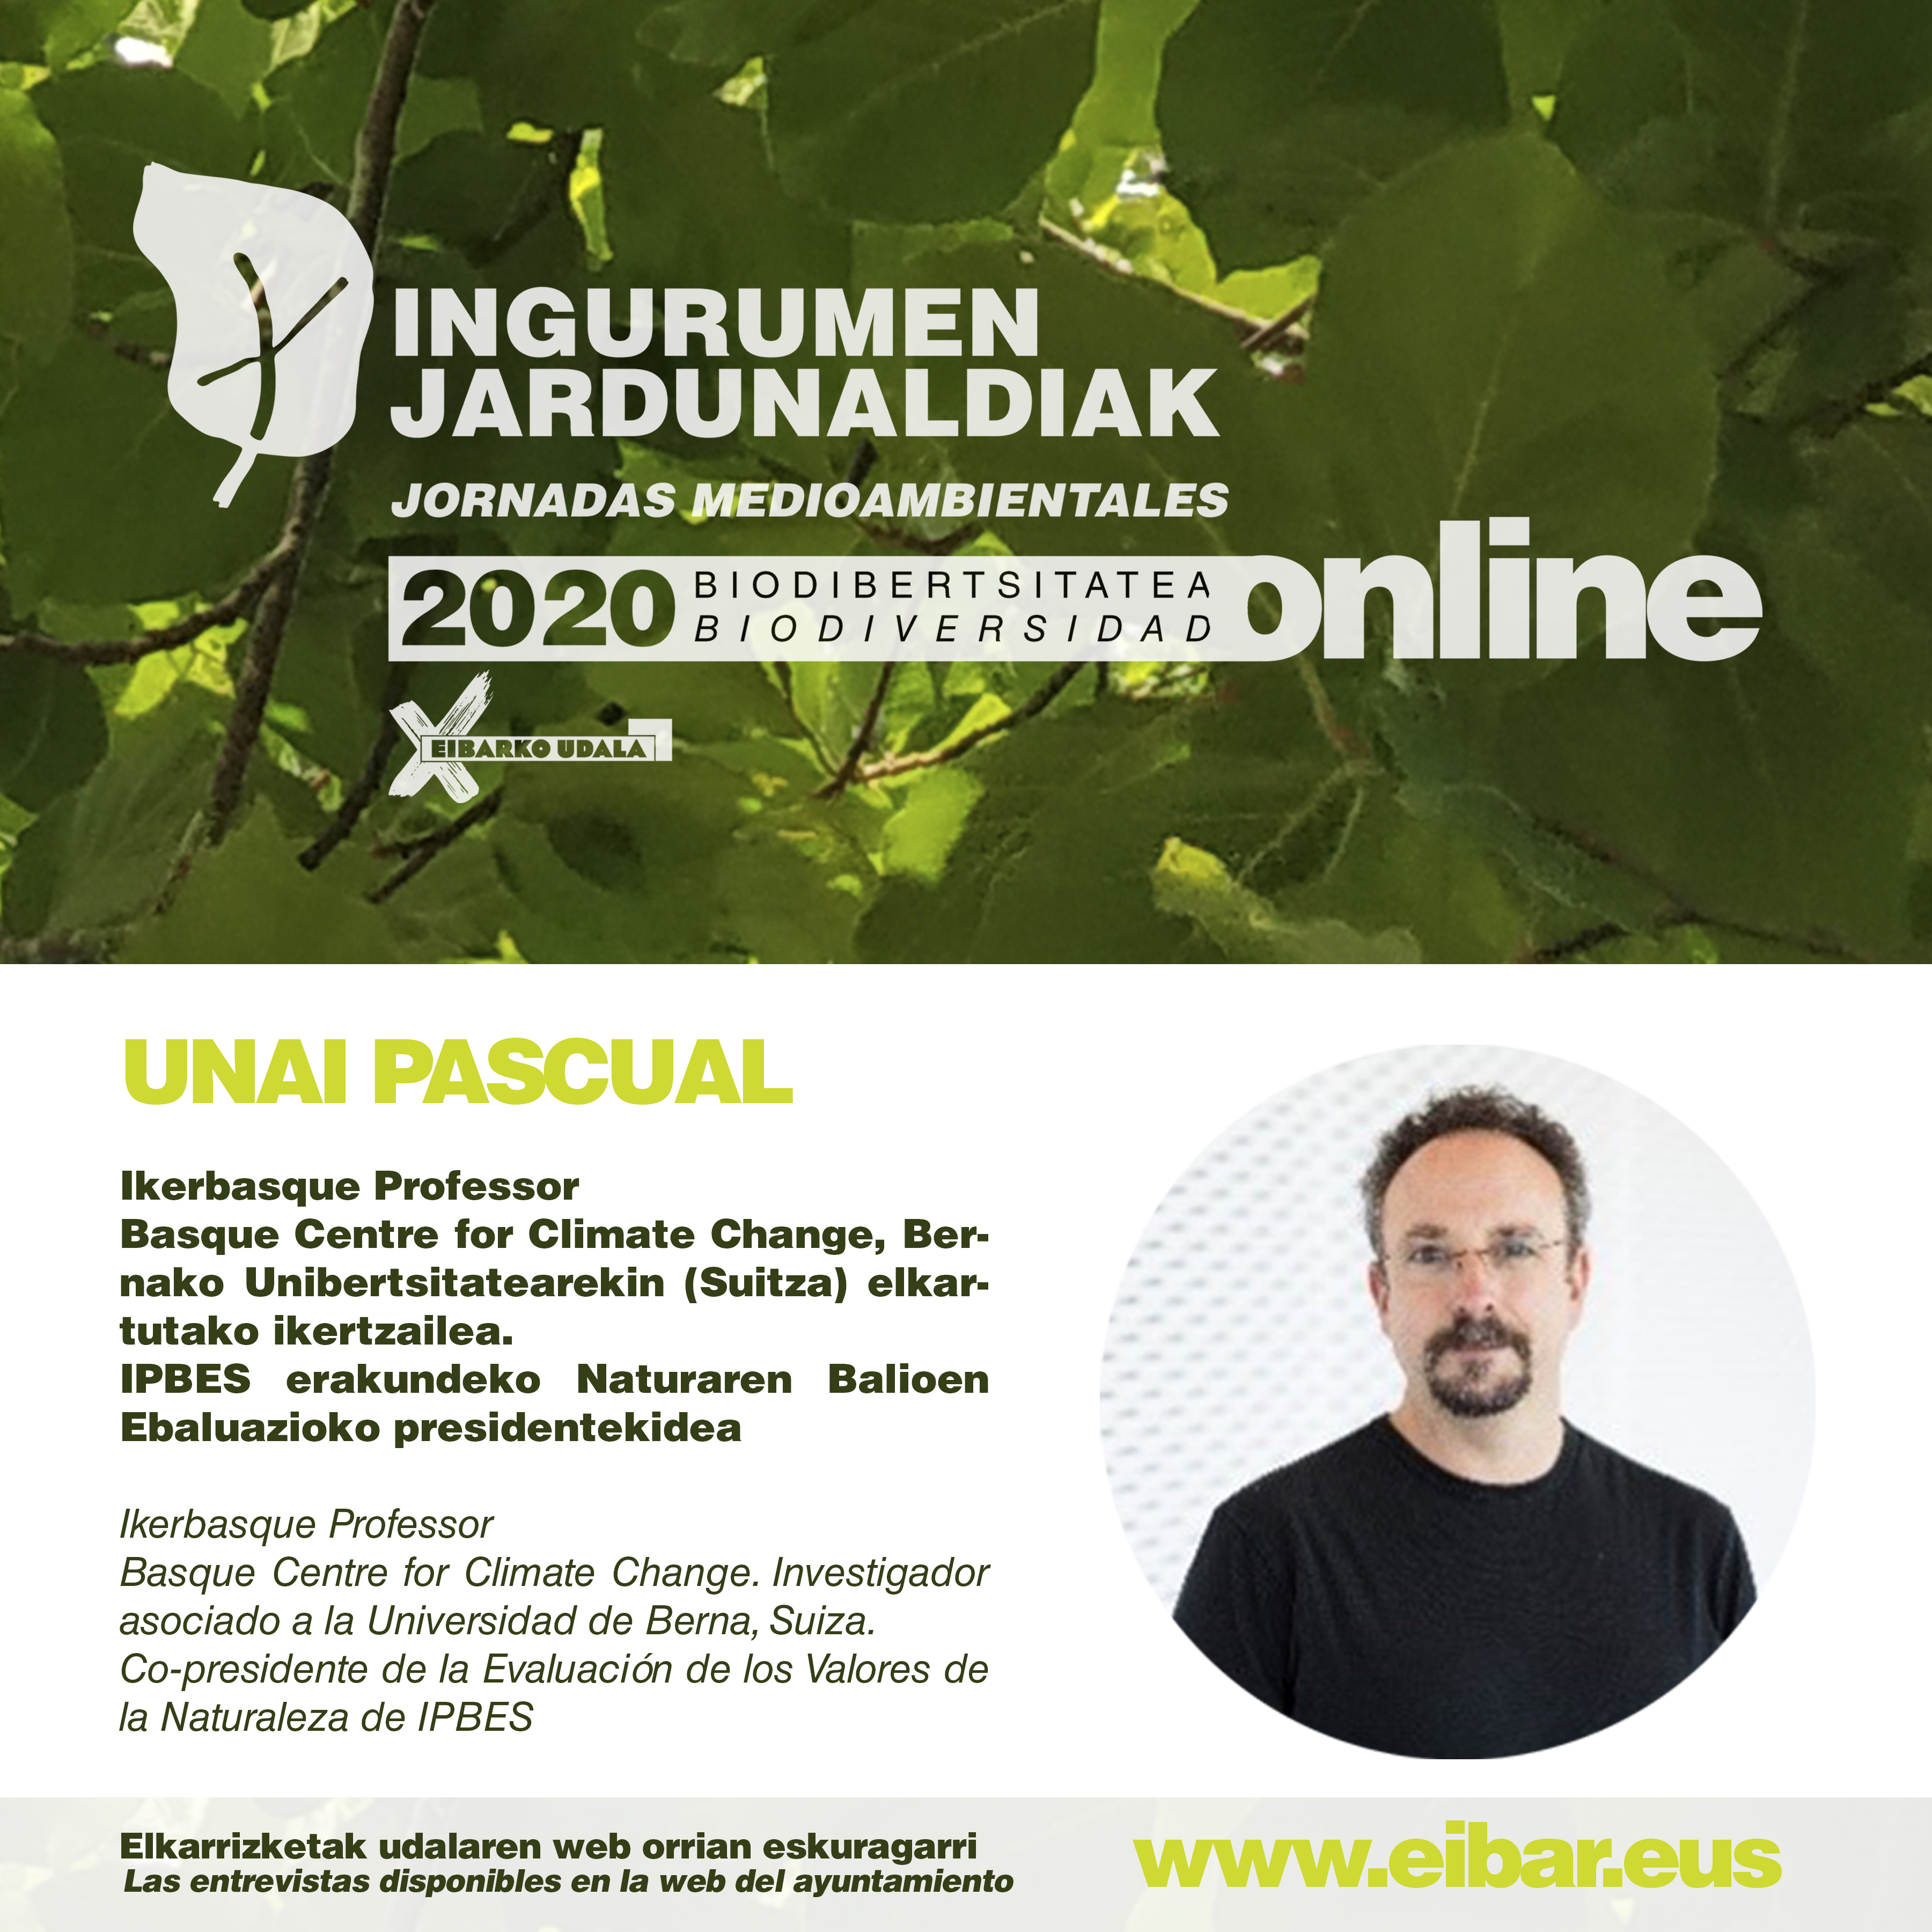 Jornadas Medioambientales: "Ante el reflejo de la crisis socioecológica", entrevista realizada a Unai Pascual